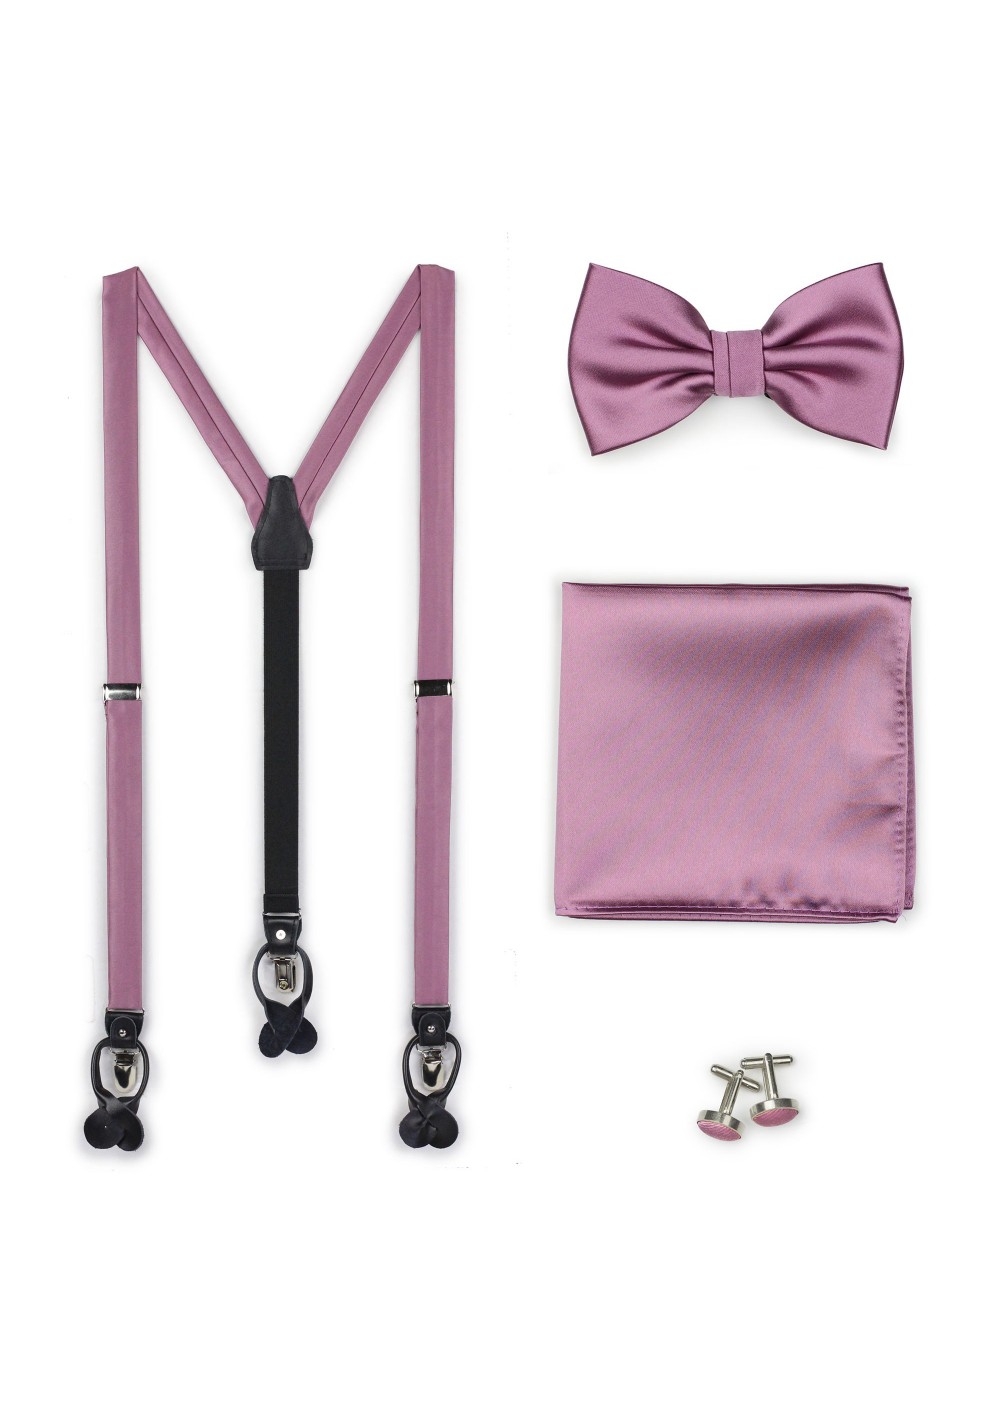 Suspender Bowtie Set in Rose